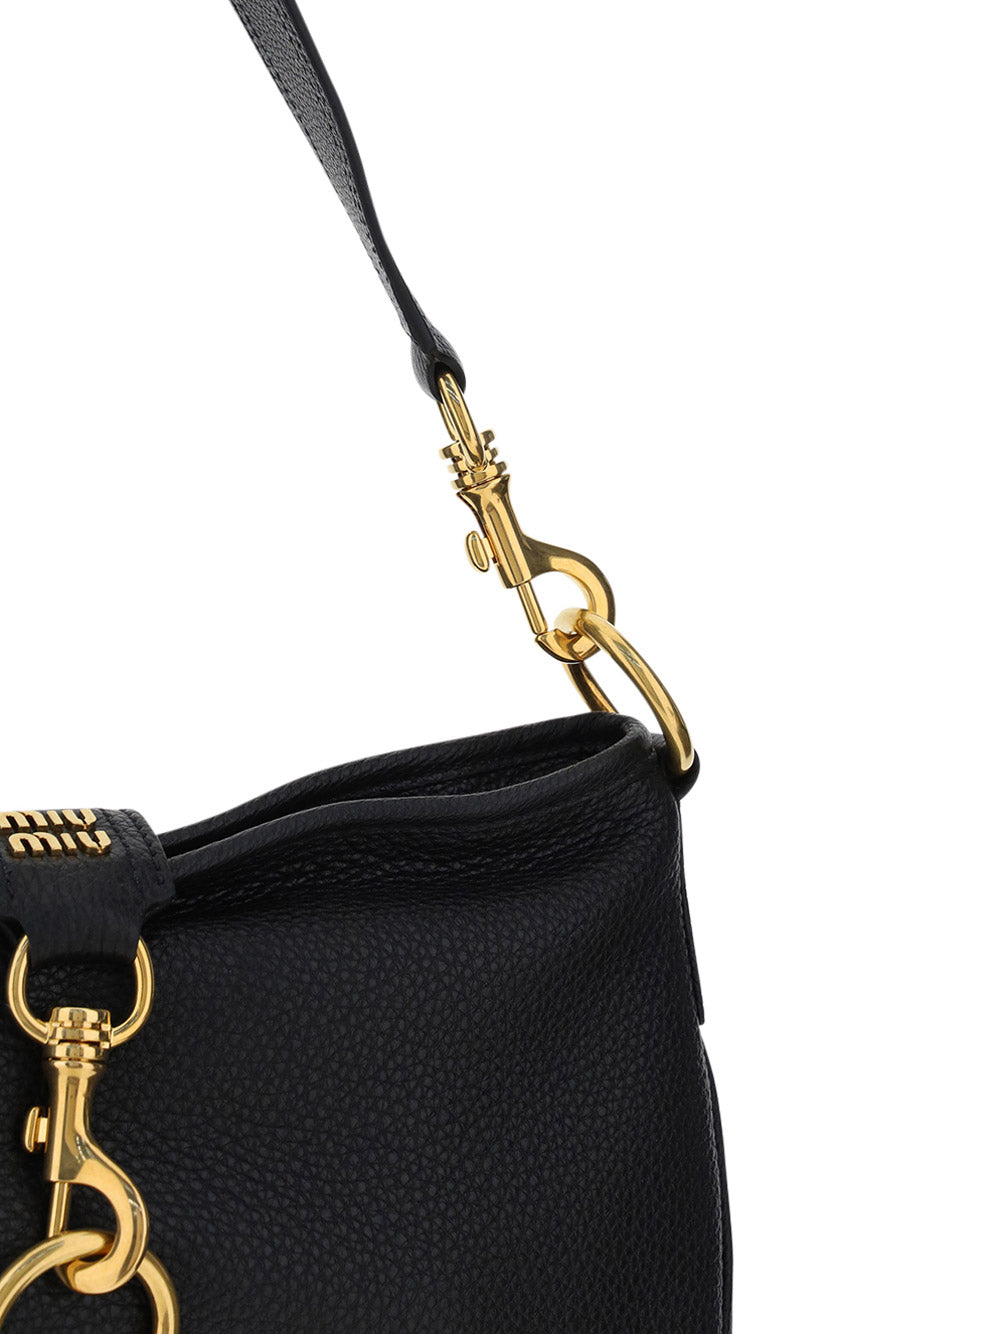 Leather Shoulder Bag with Snap Hook - Black